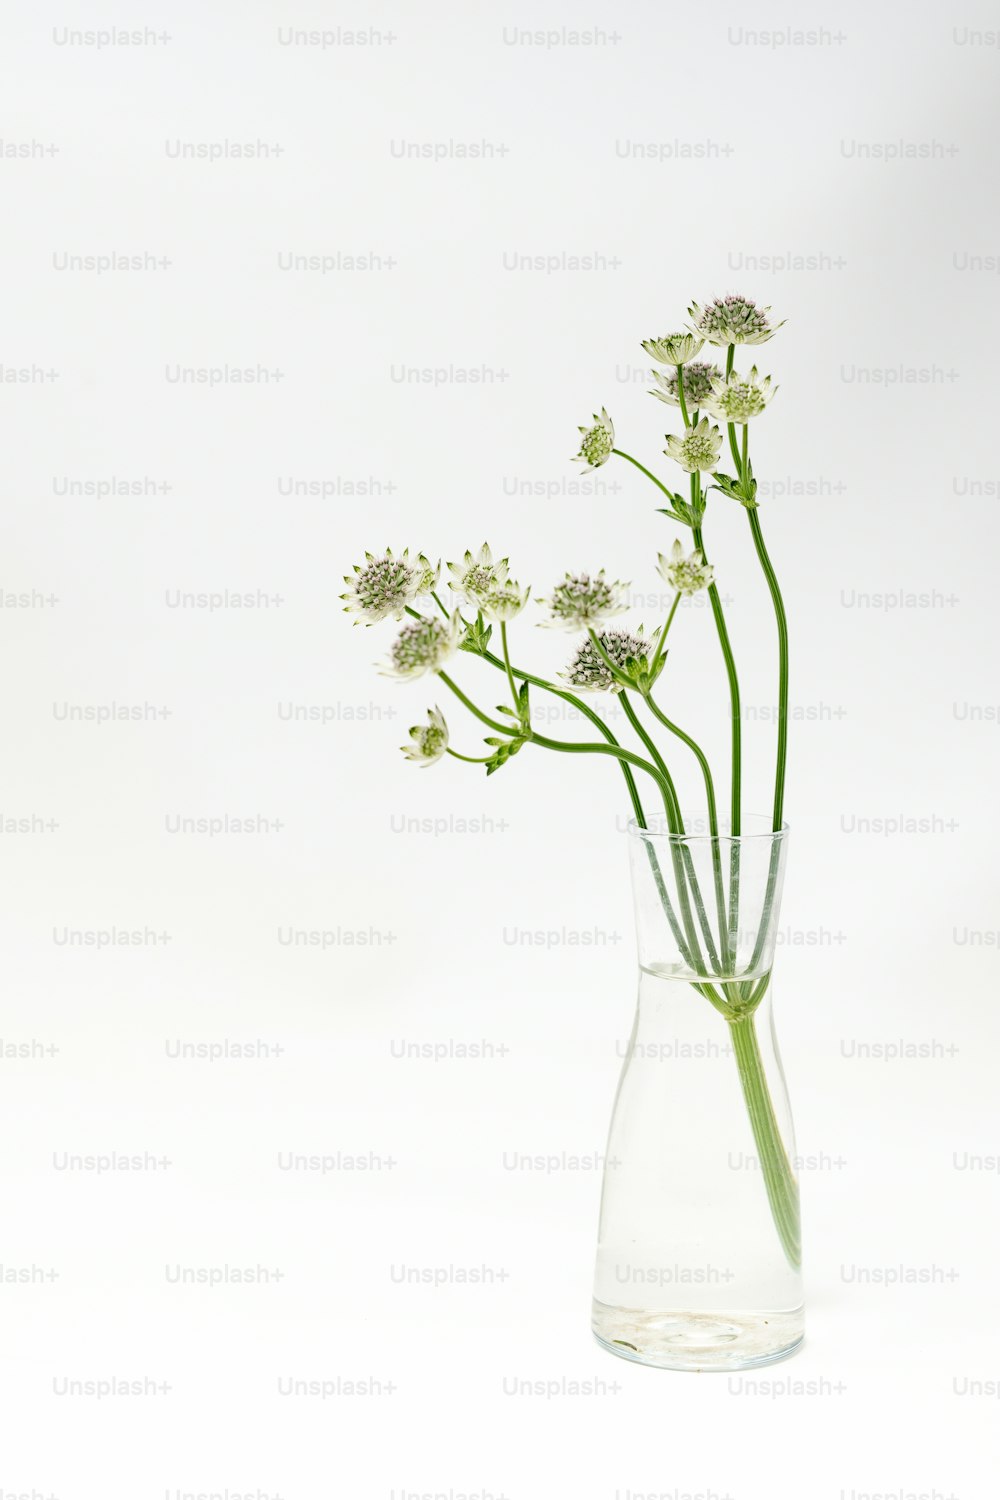 um vaso de vidro cheio de flores brancas em cima de uma mesa